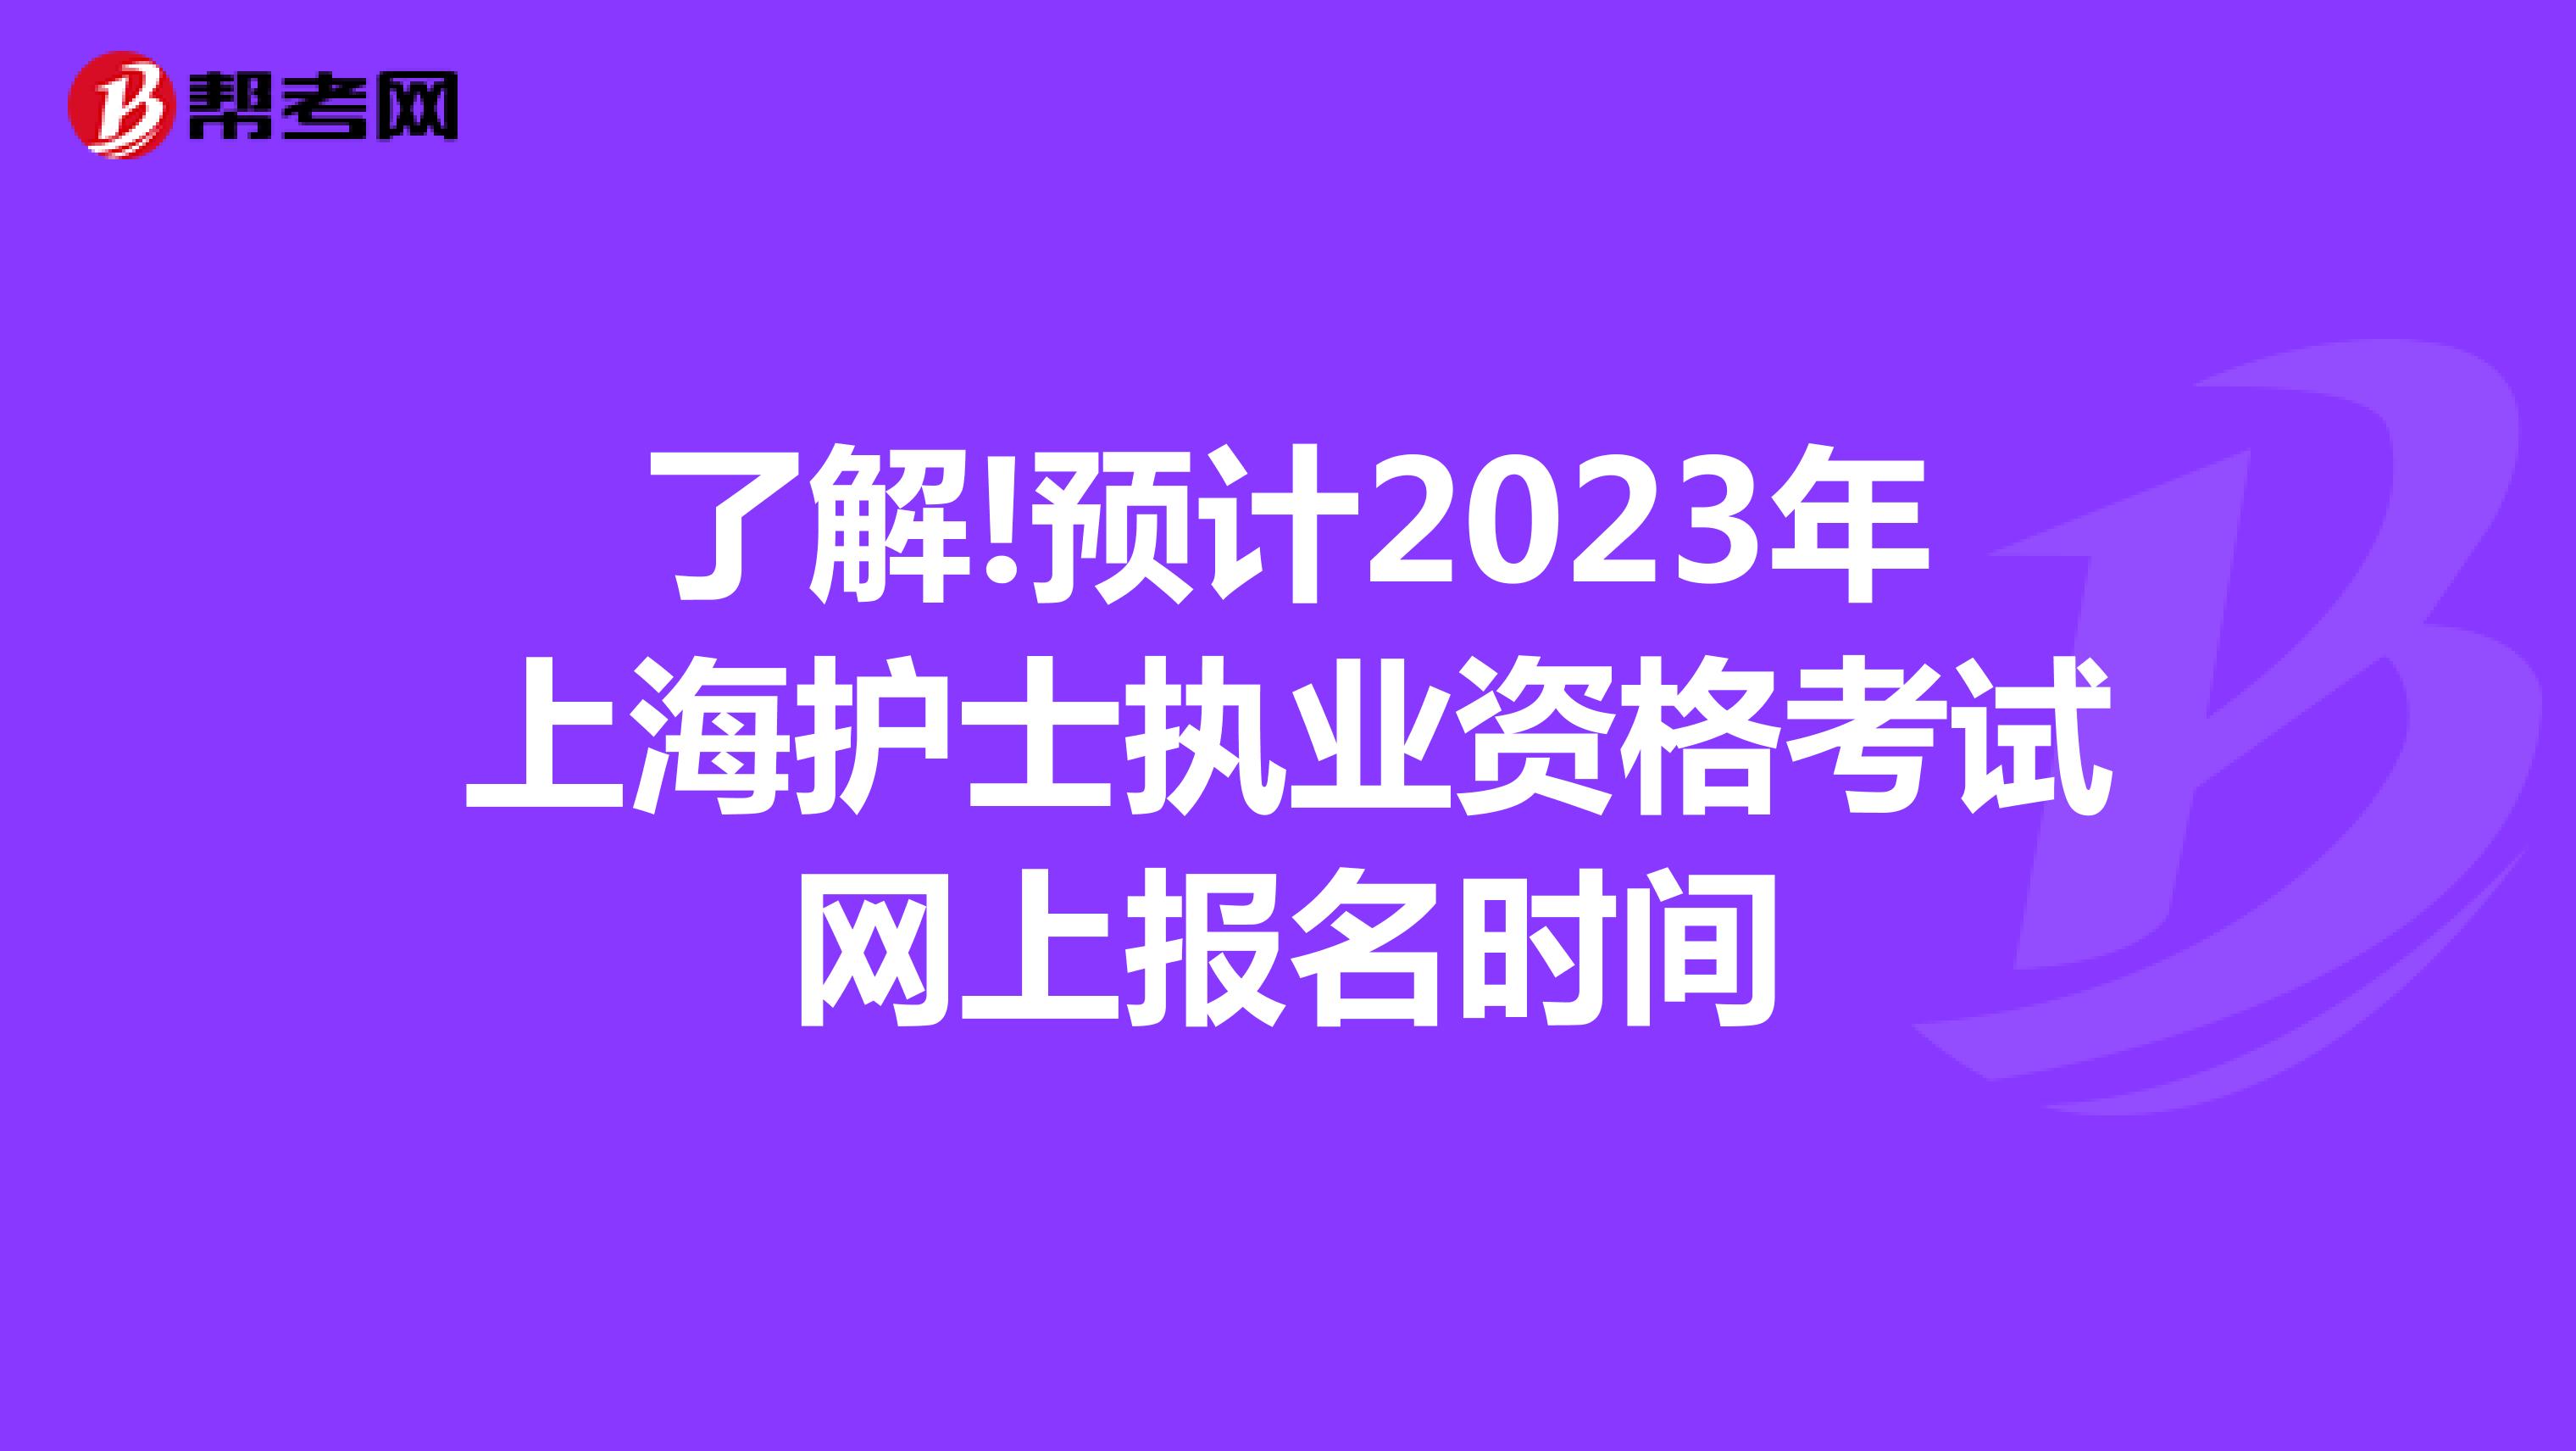 了解!预计2023年上海护士执业资格考试网上报名时间